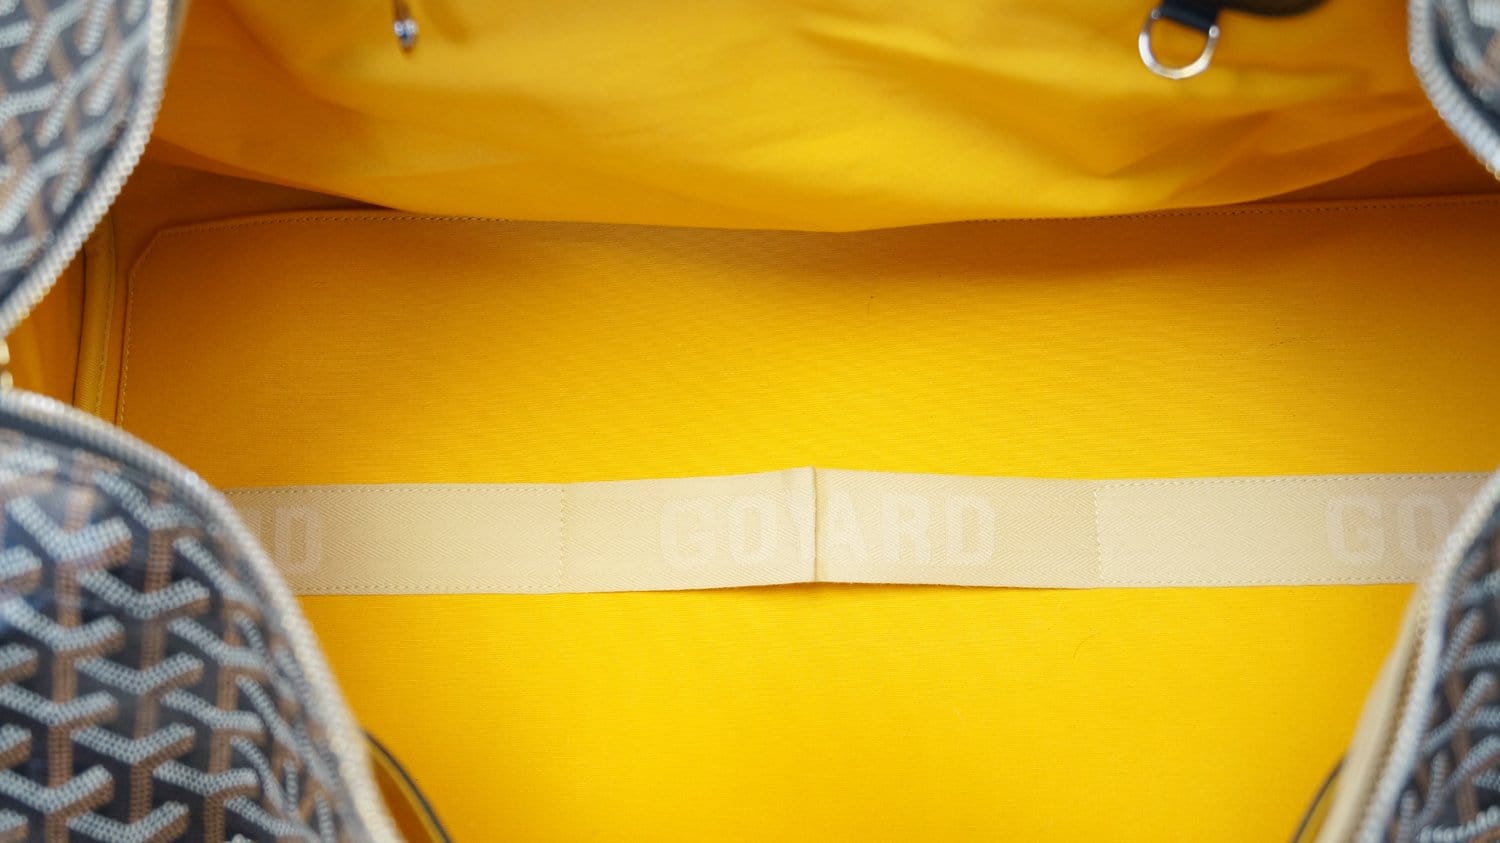 Goyard Duffle - 2 For Sale on 1stDibs  goyard duffle bag price, goyard  weekender bag price, goyard bag